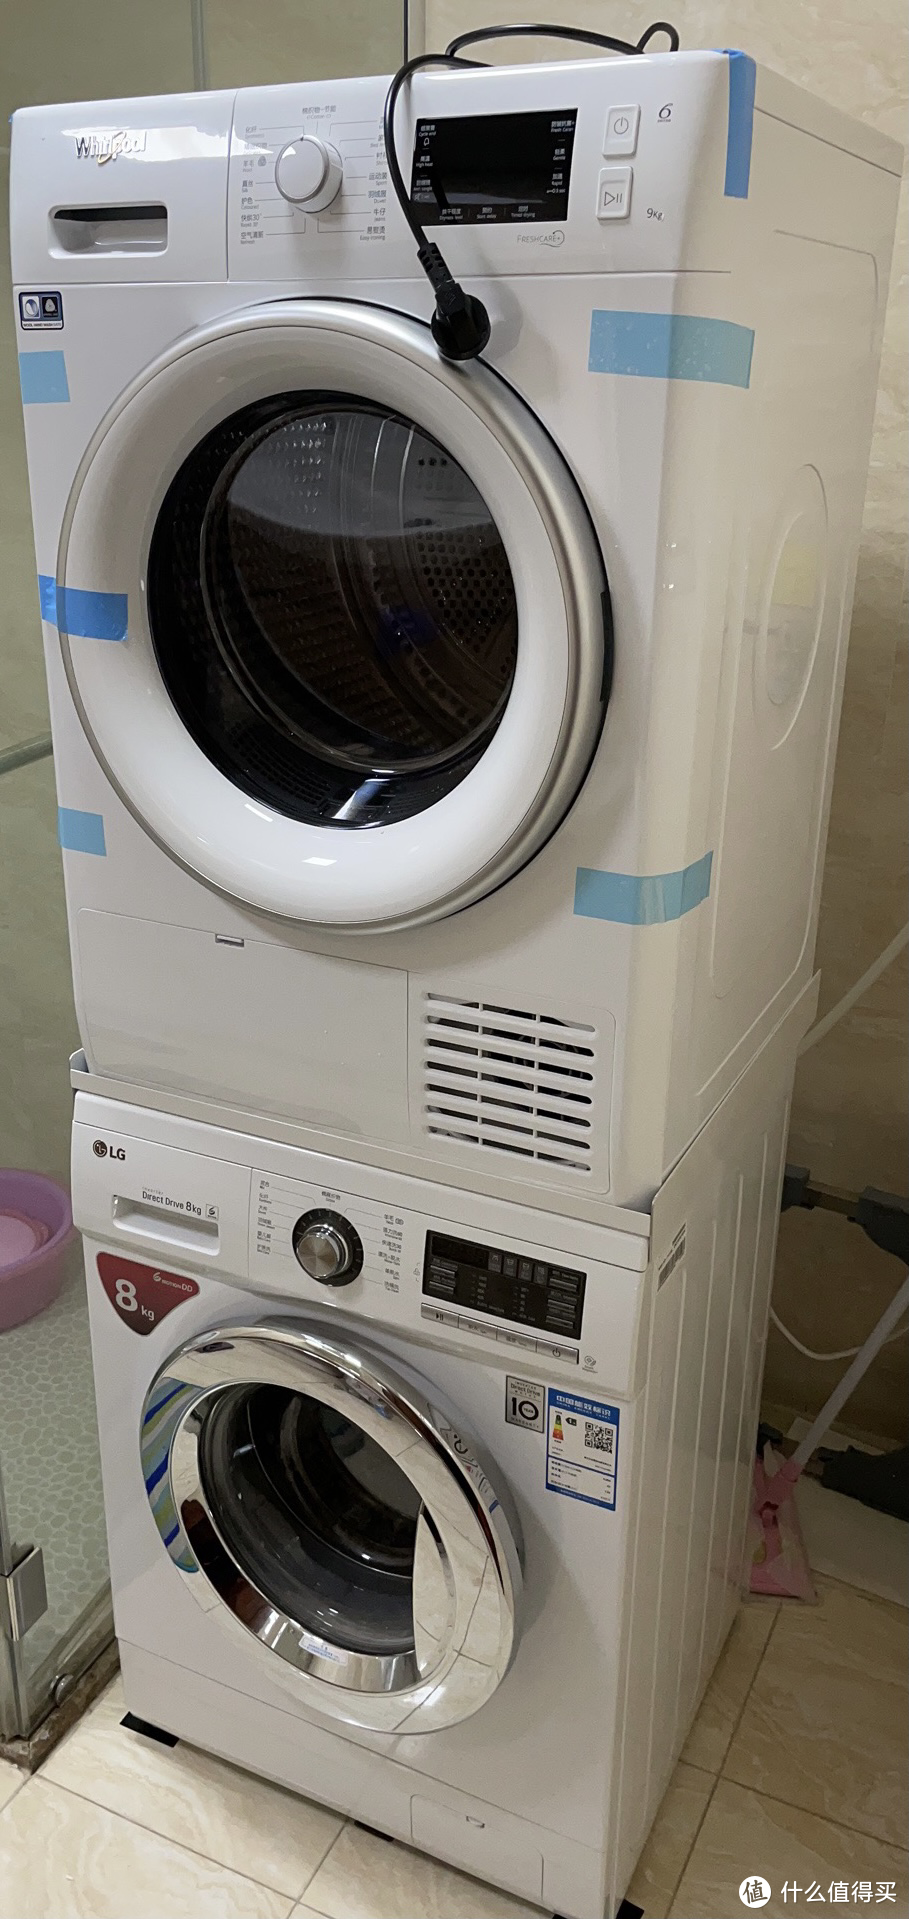 由于vr108没法叠加，所以放在了儿童洗衣机上，用的通用支架，运行起来还是很稳的